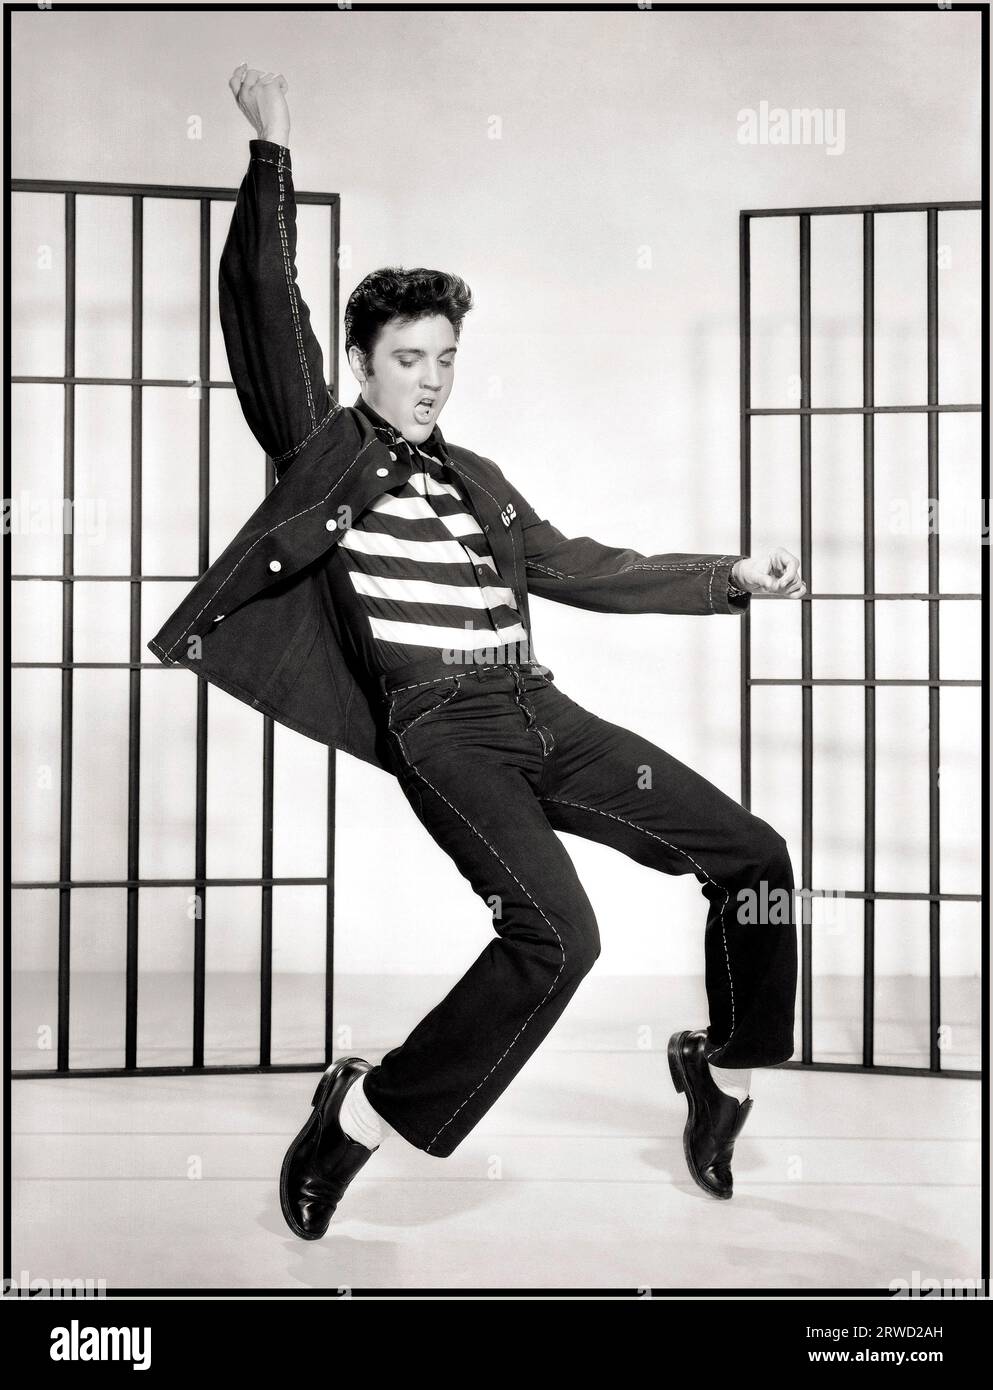 JAILHOUSE ROCK 1950's Elvis Presley film Still from the iconique Seminal Movie & Song 'Jailhouse Rock' 1957 les paroles de la chanson commencent... "Warden a organisé une fête dans la prison du comté" Hollywood USA Banque D'Images